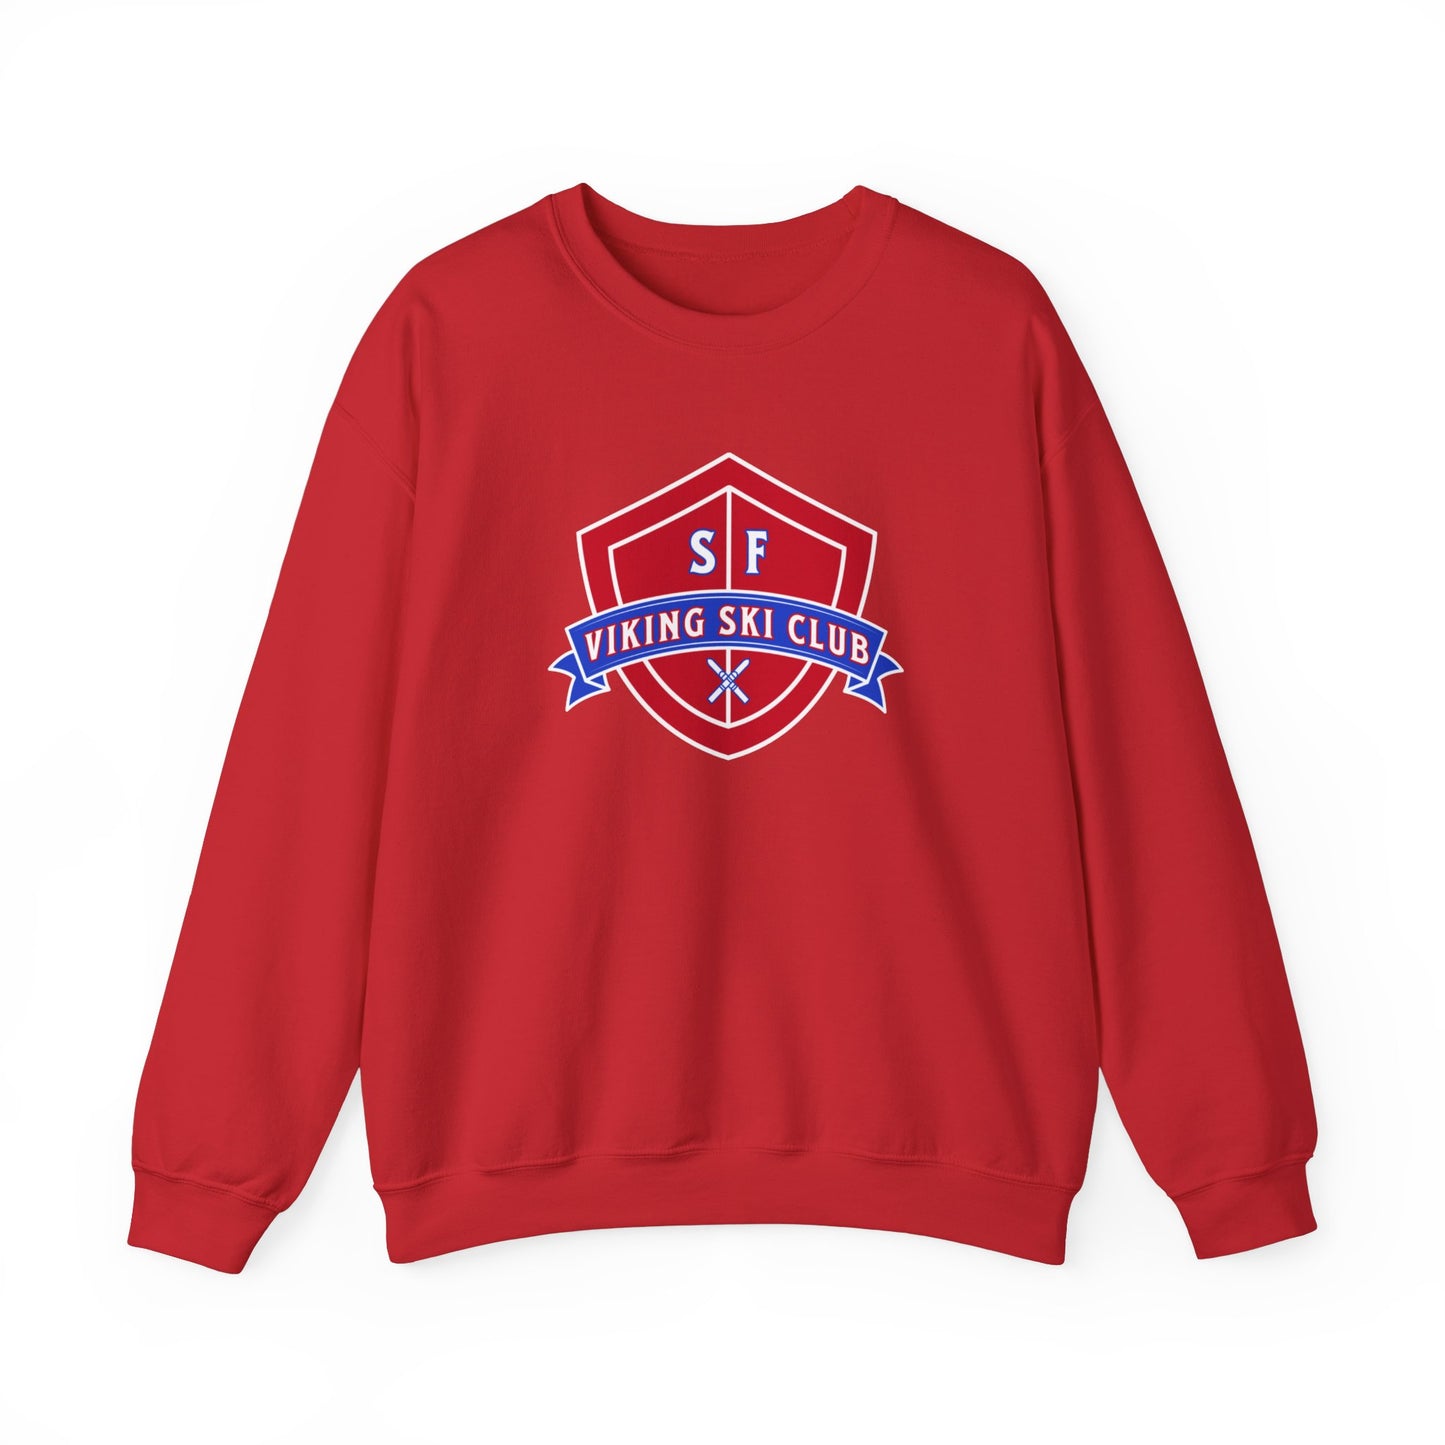 SF Viking Ski Club Crewneck Sweatshirt